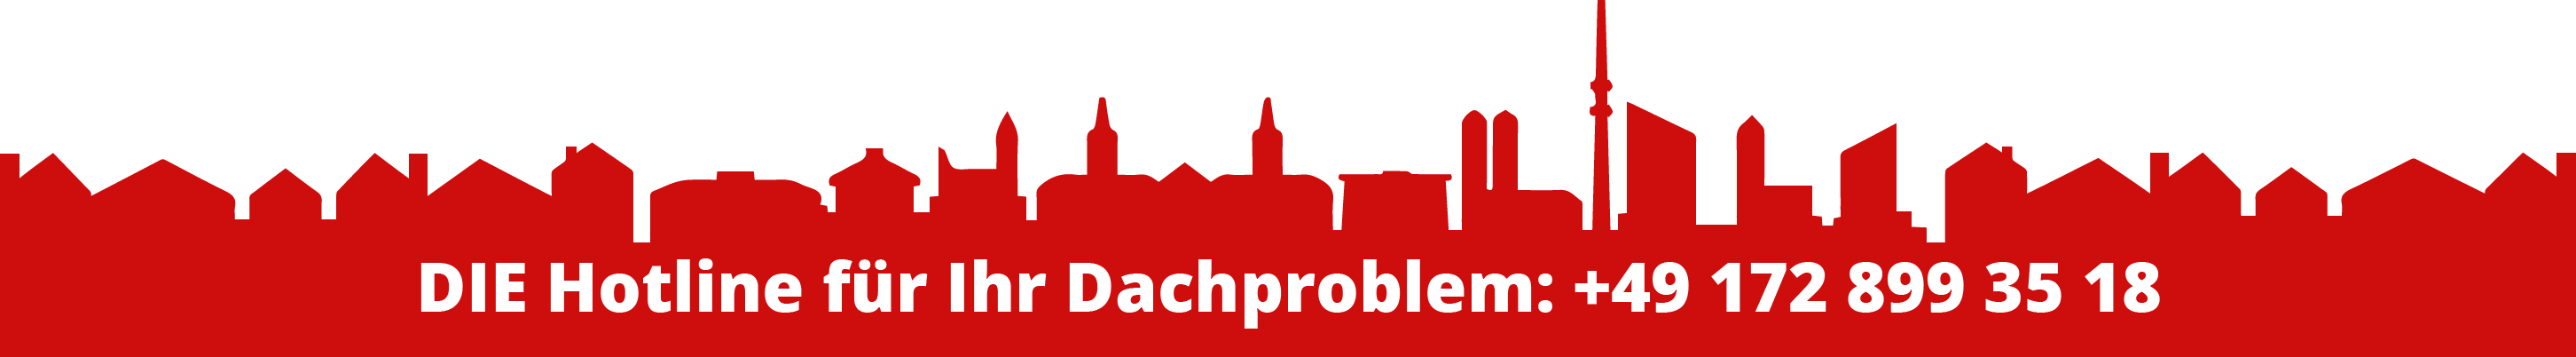 Die Hotline für Ihr Dachproblem oder Ihren Dachschaden in München: Peter Schubert, Mobil +49 172 899 35 18